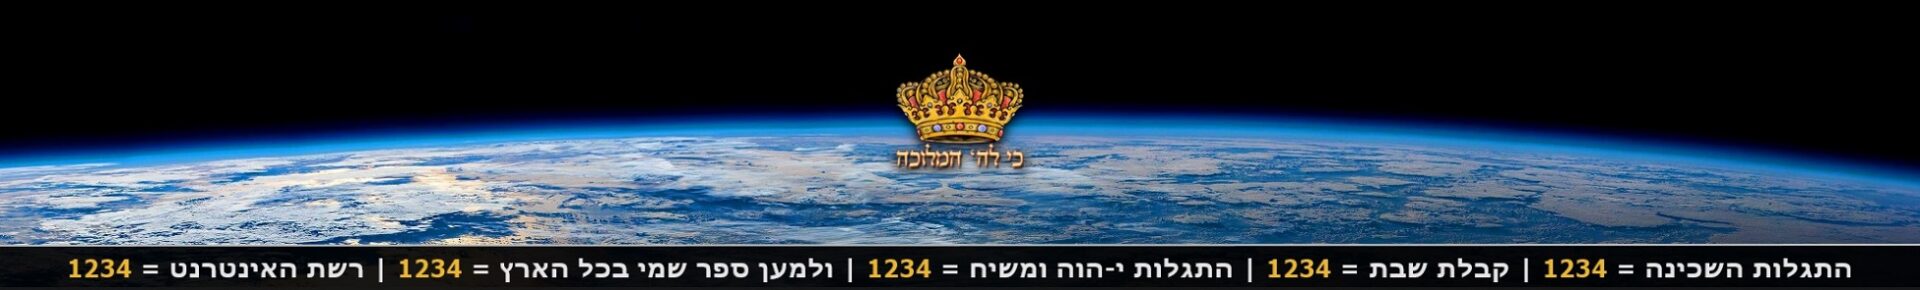 אנו נמצאים בשנת 1445 בספירה המוסלמית | גלרית דוד המלך מספר 16/17 רמזי ‘דוד=14′ ו’גאולה=45’